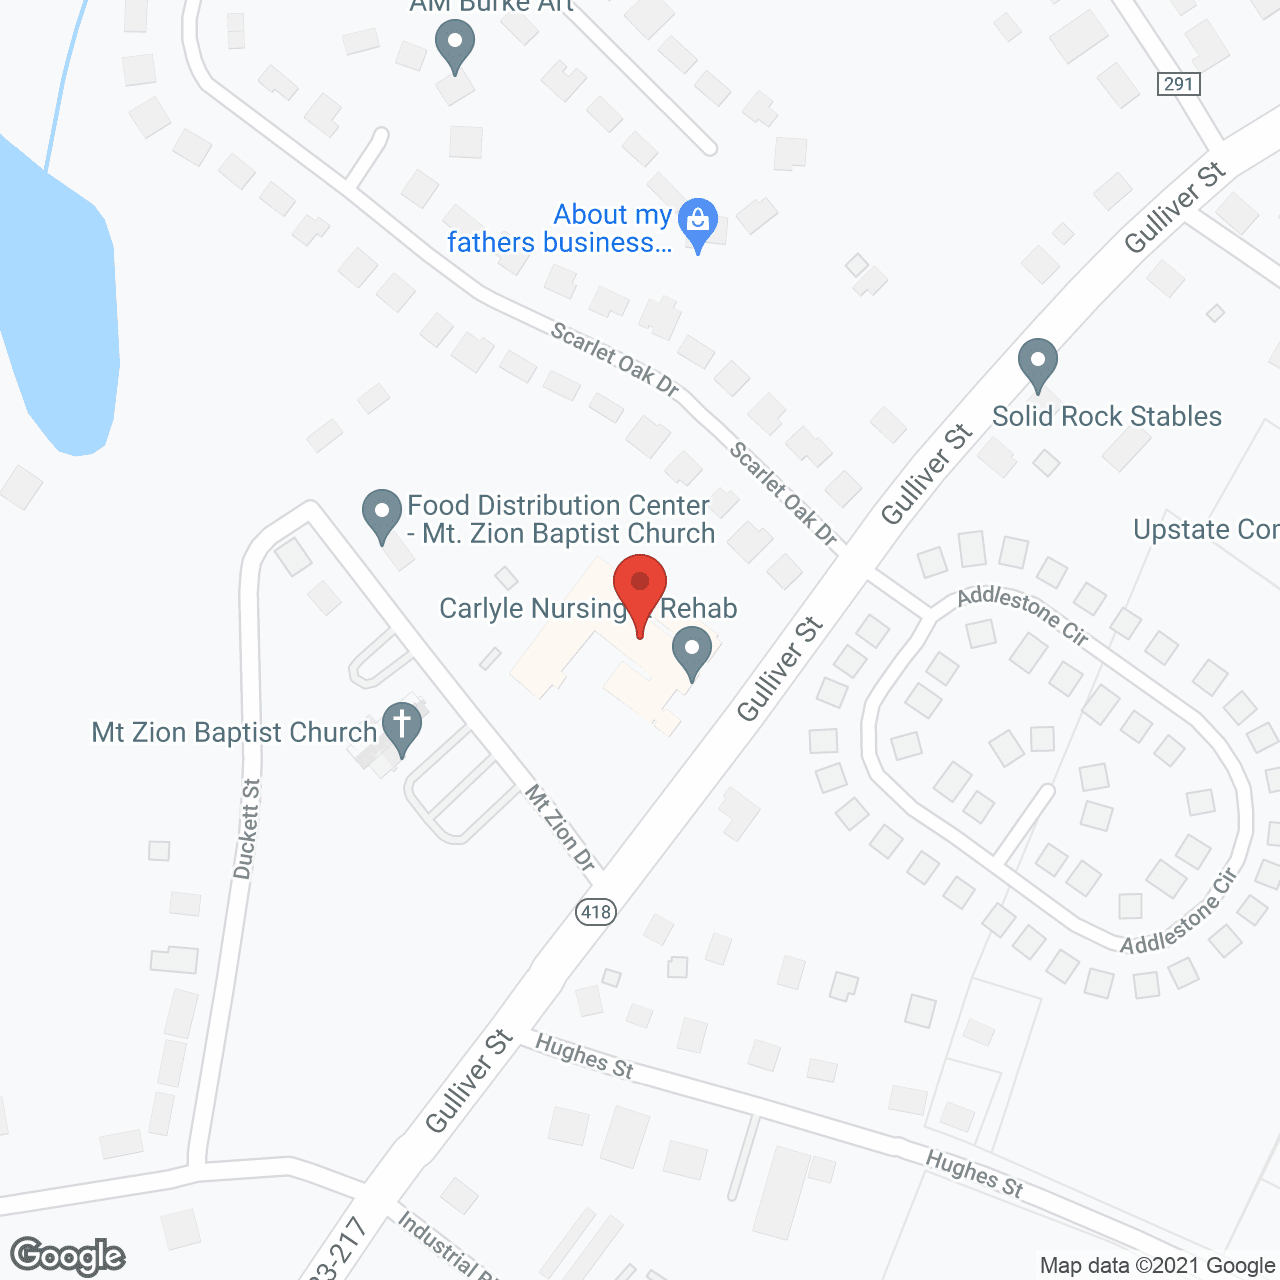 Fountain Inn Nursing Home in google map